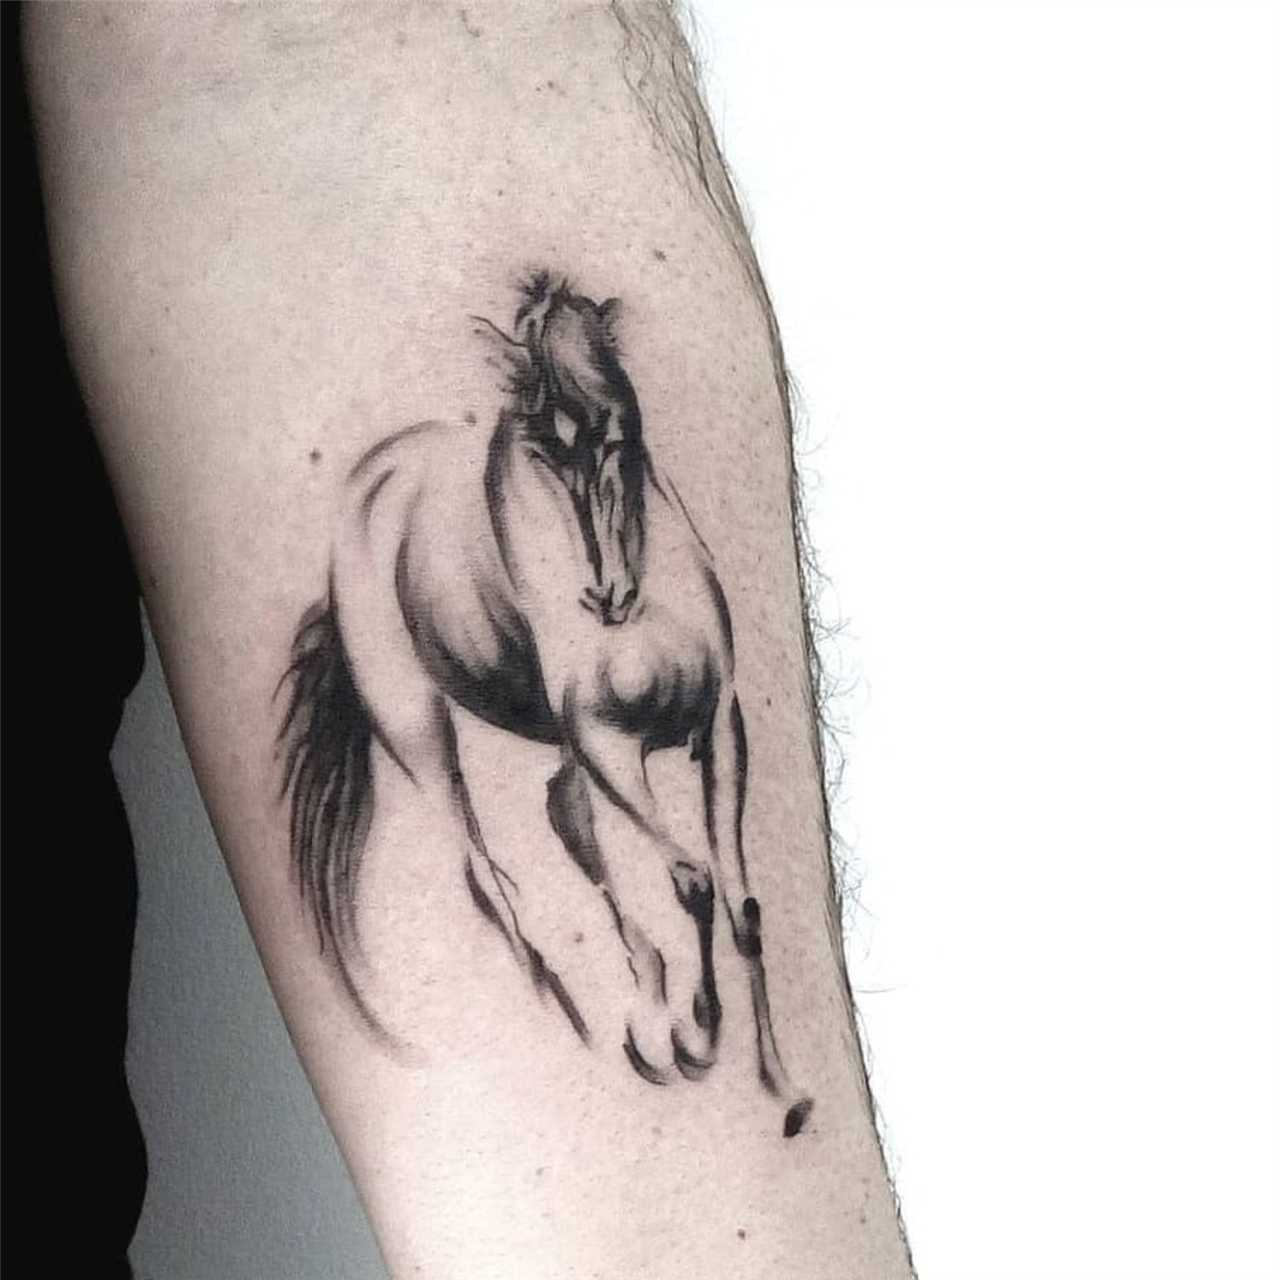 Kingsman tattoo  art studio on Twitter Horse tattoo  httpstcoojxOb8Dlt1  Twitter